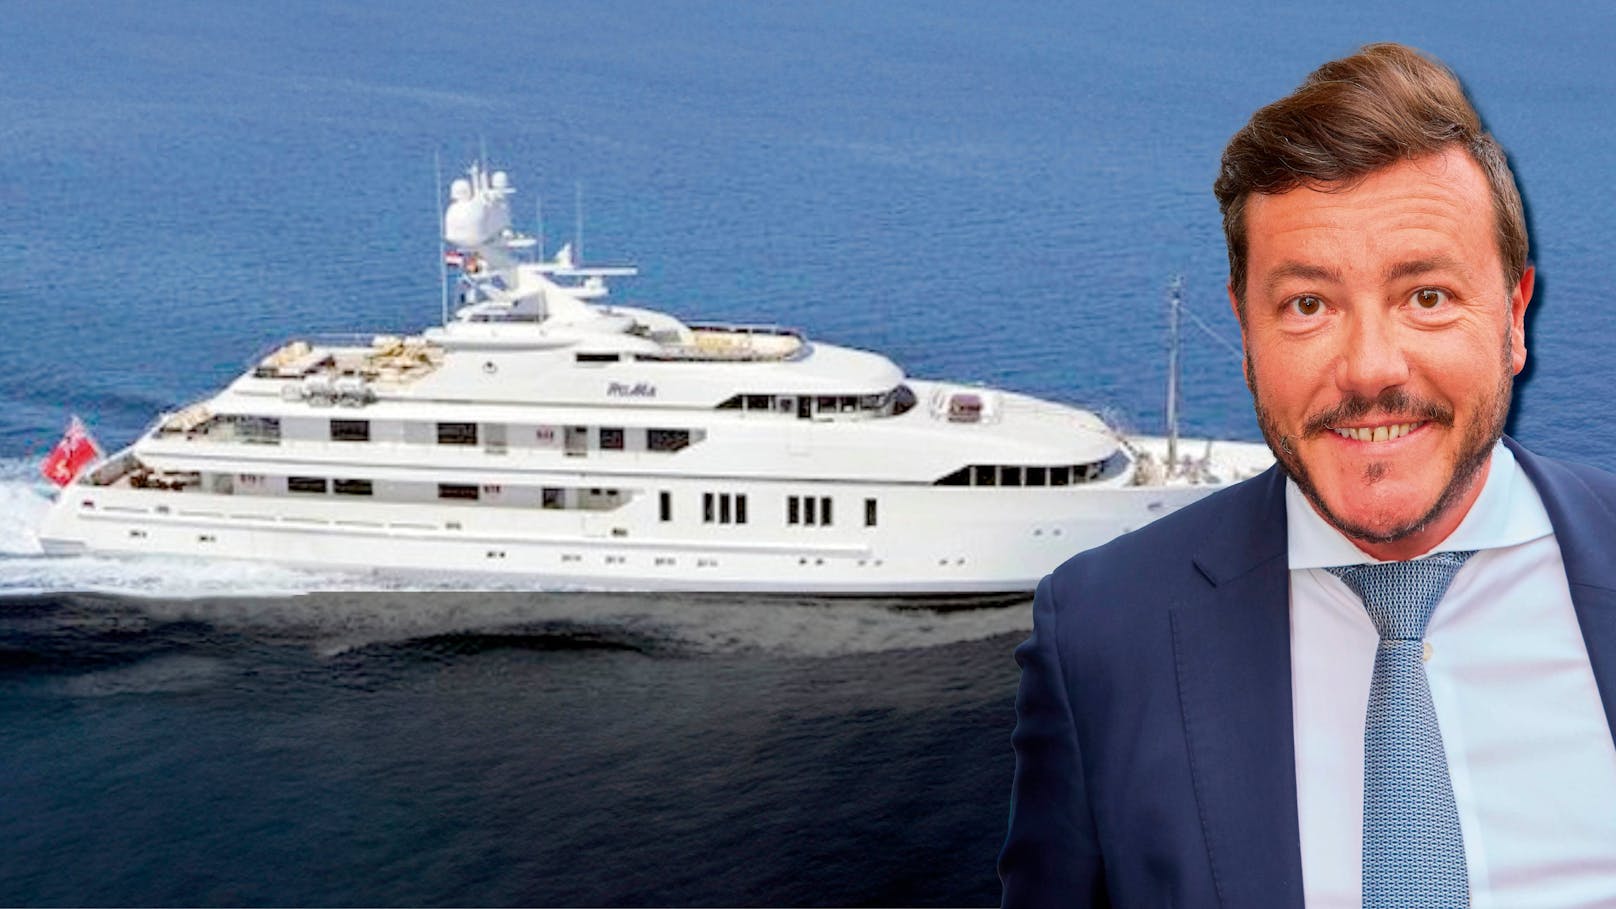 Benko verkaufte Luxus-Yacht um "nur" 25 Millionen Euro